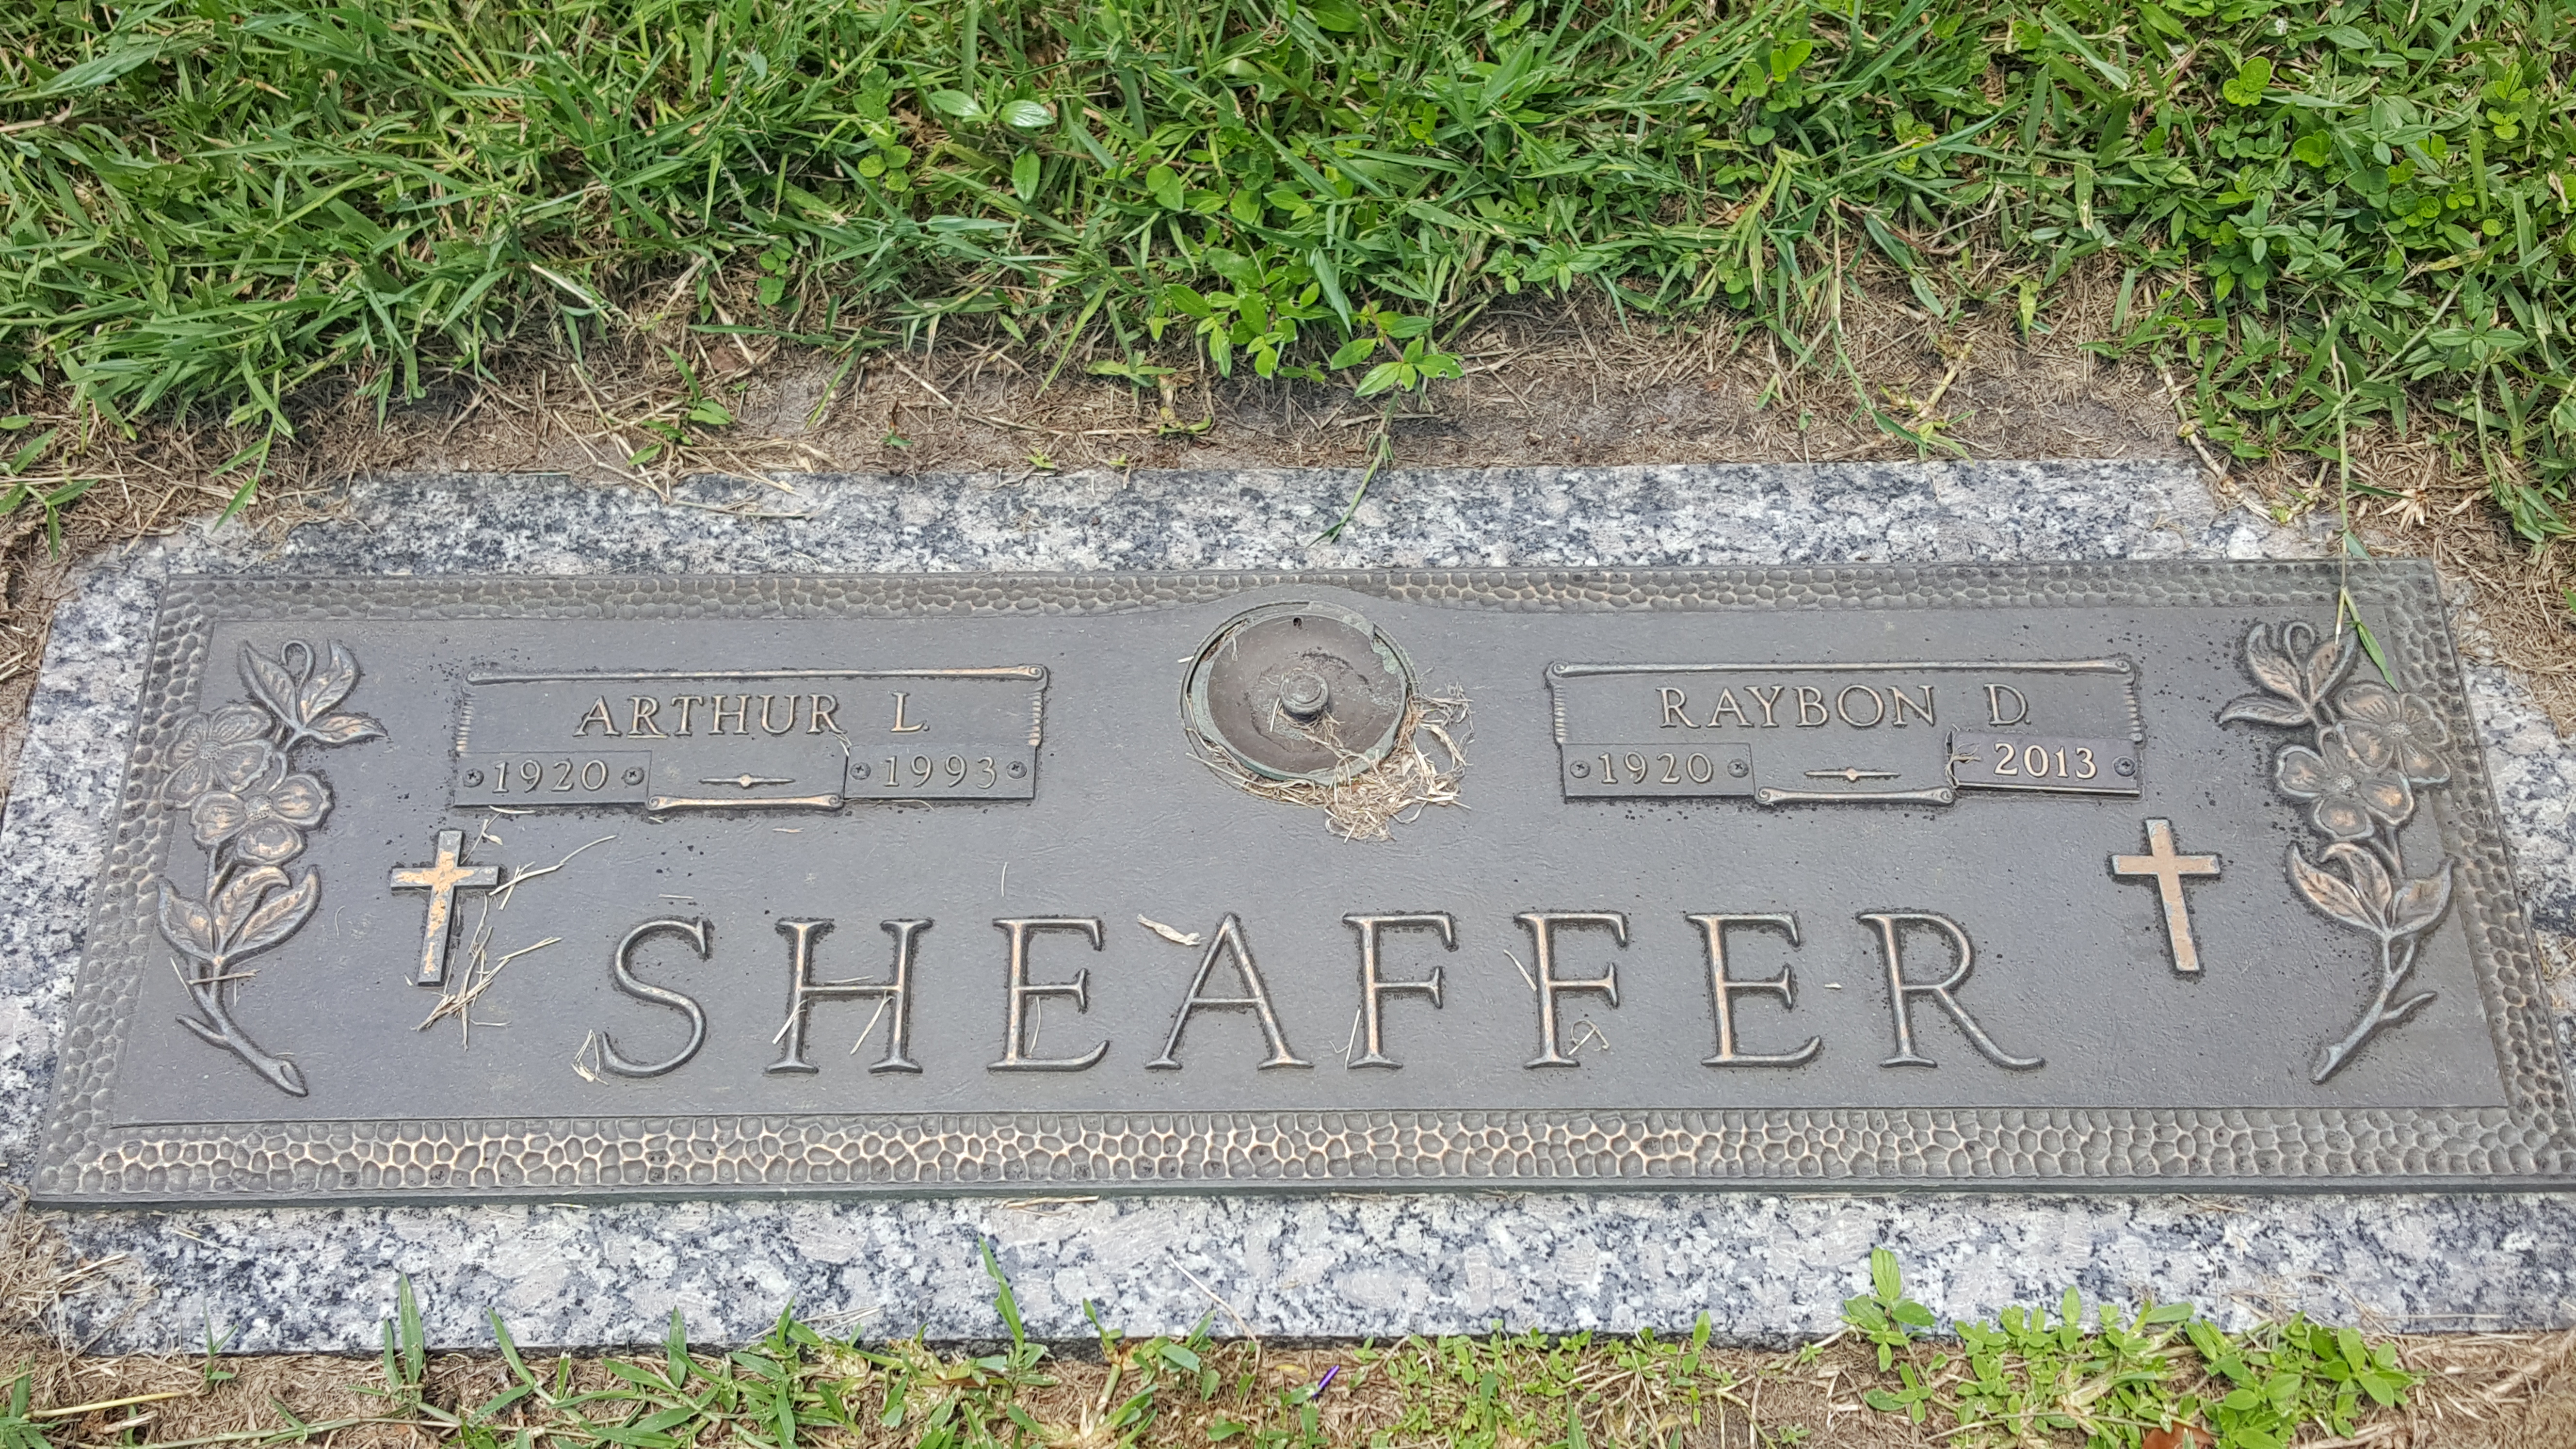 Arthur L Sheaffer